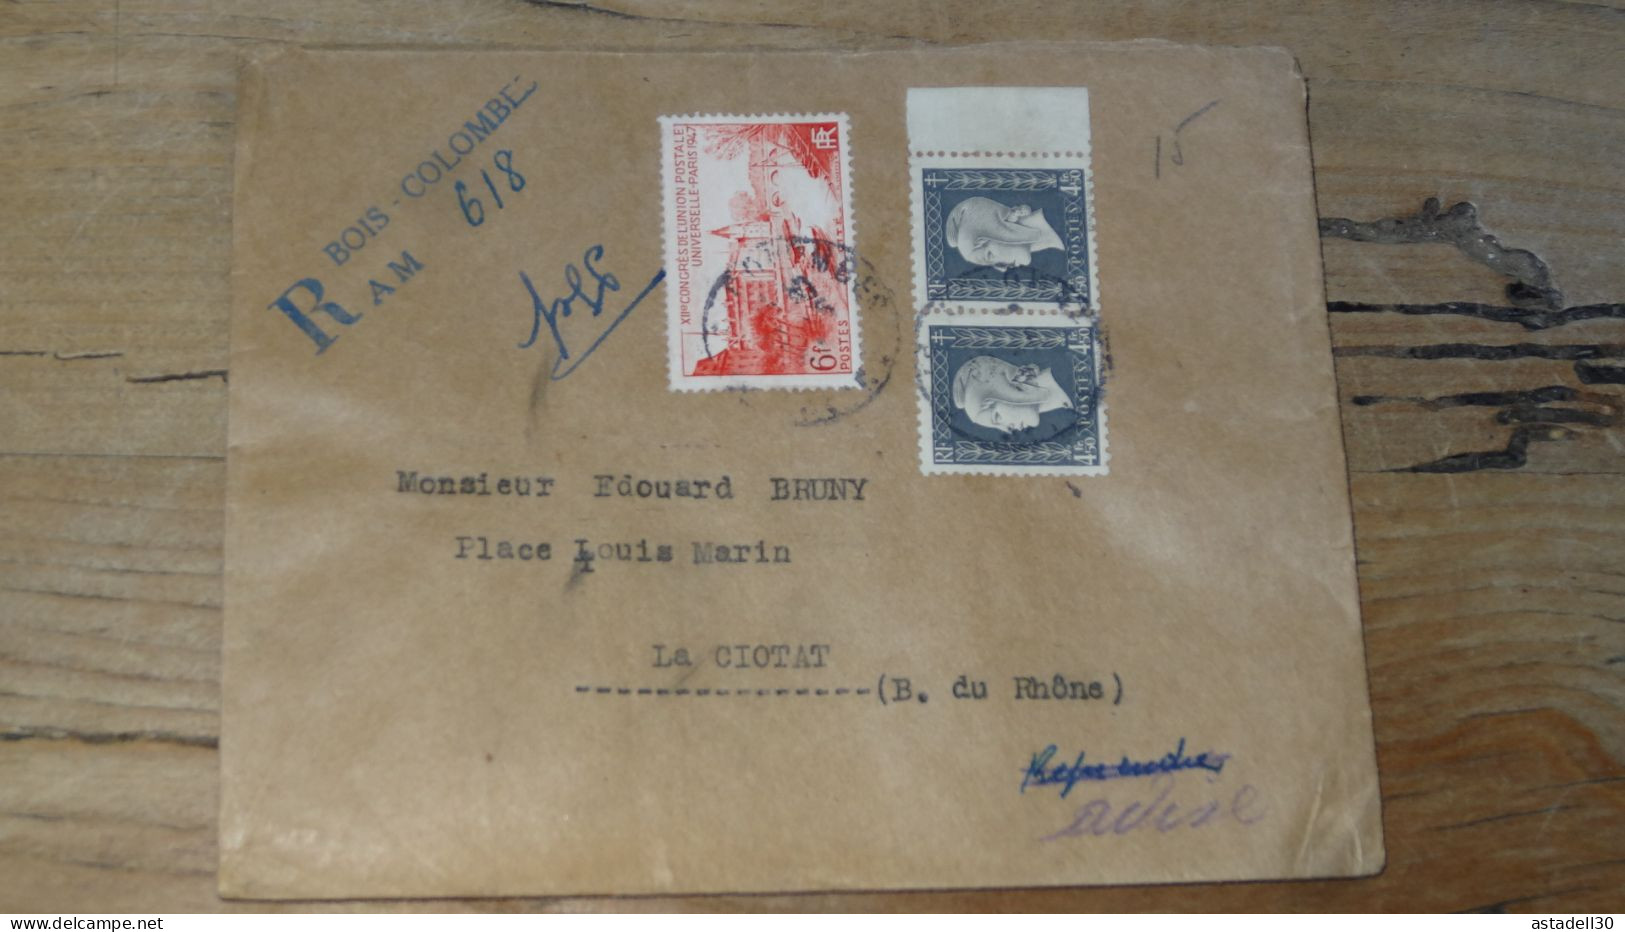 Enveloppe Recommandée Bois Colombes Pour LA CIOTAT - 1947  ............BOITE1.......... 450 - 1921-1960: Période Moderne